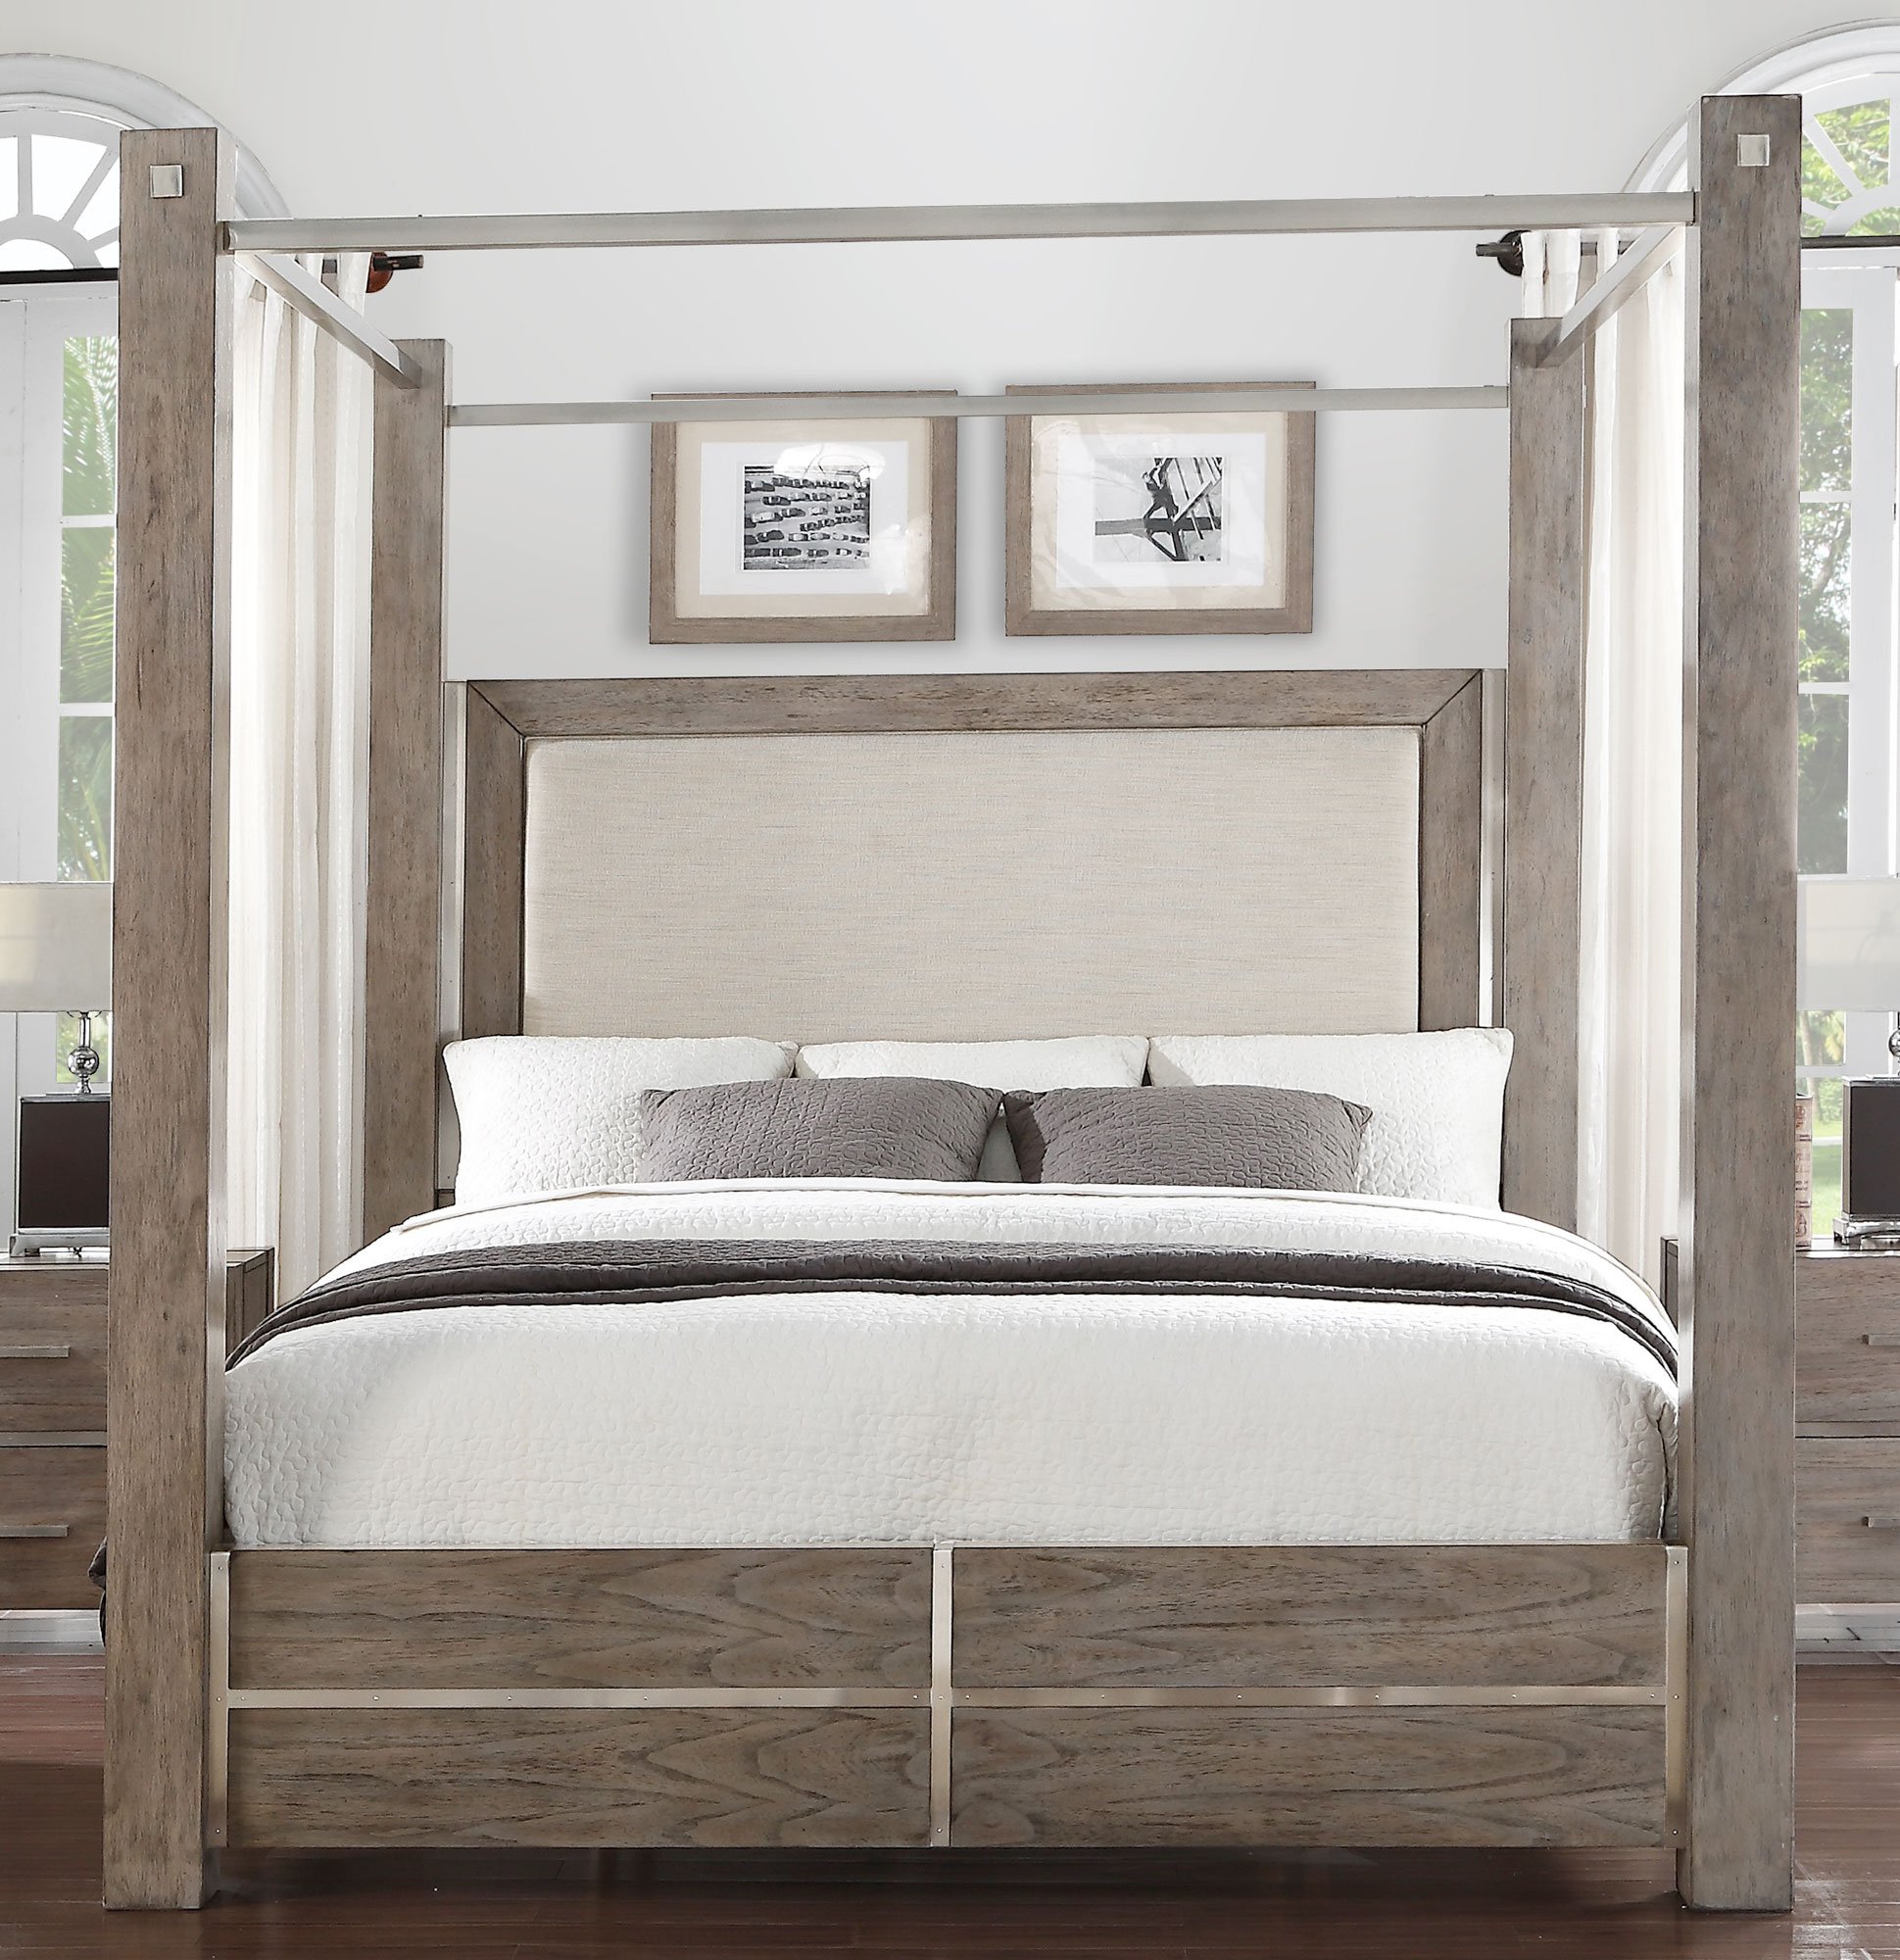 Gray & Silver Contemporary 7-Piece Queen Canopy Bedroom ...